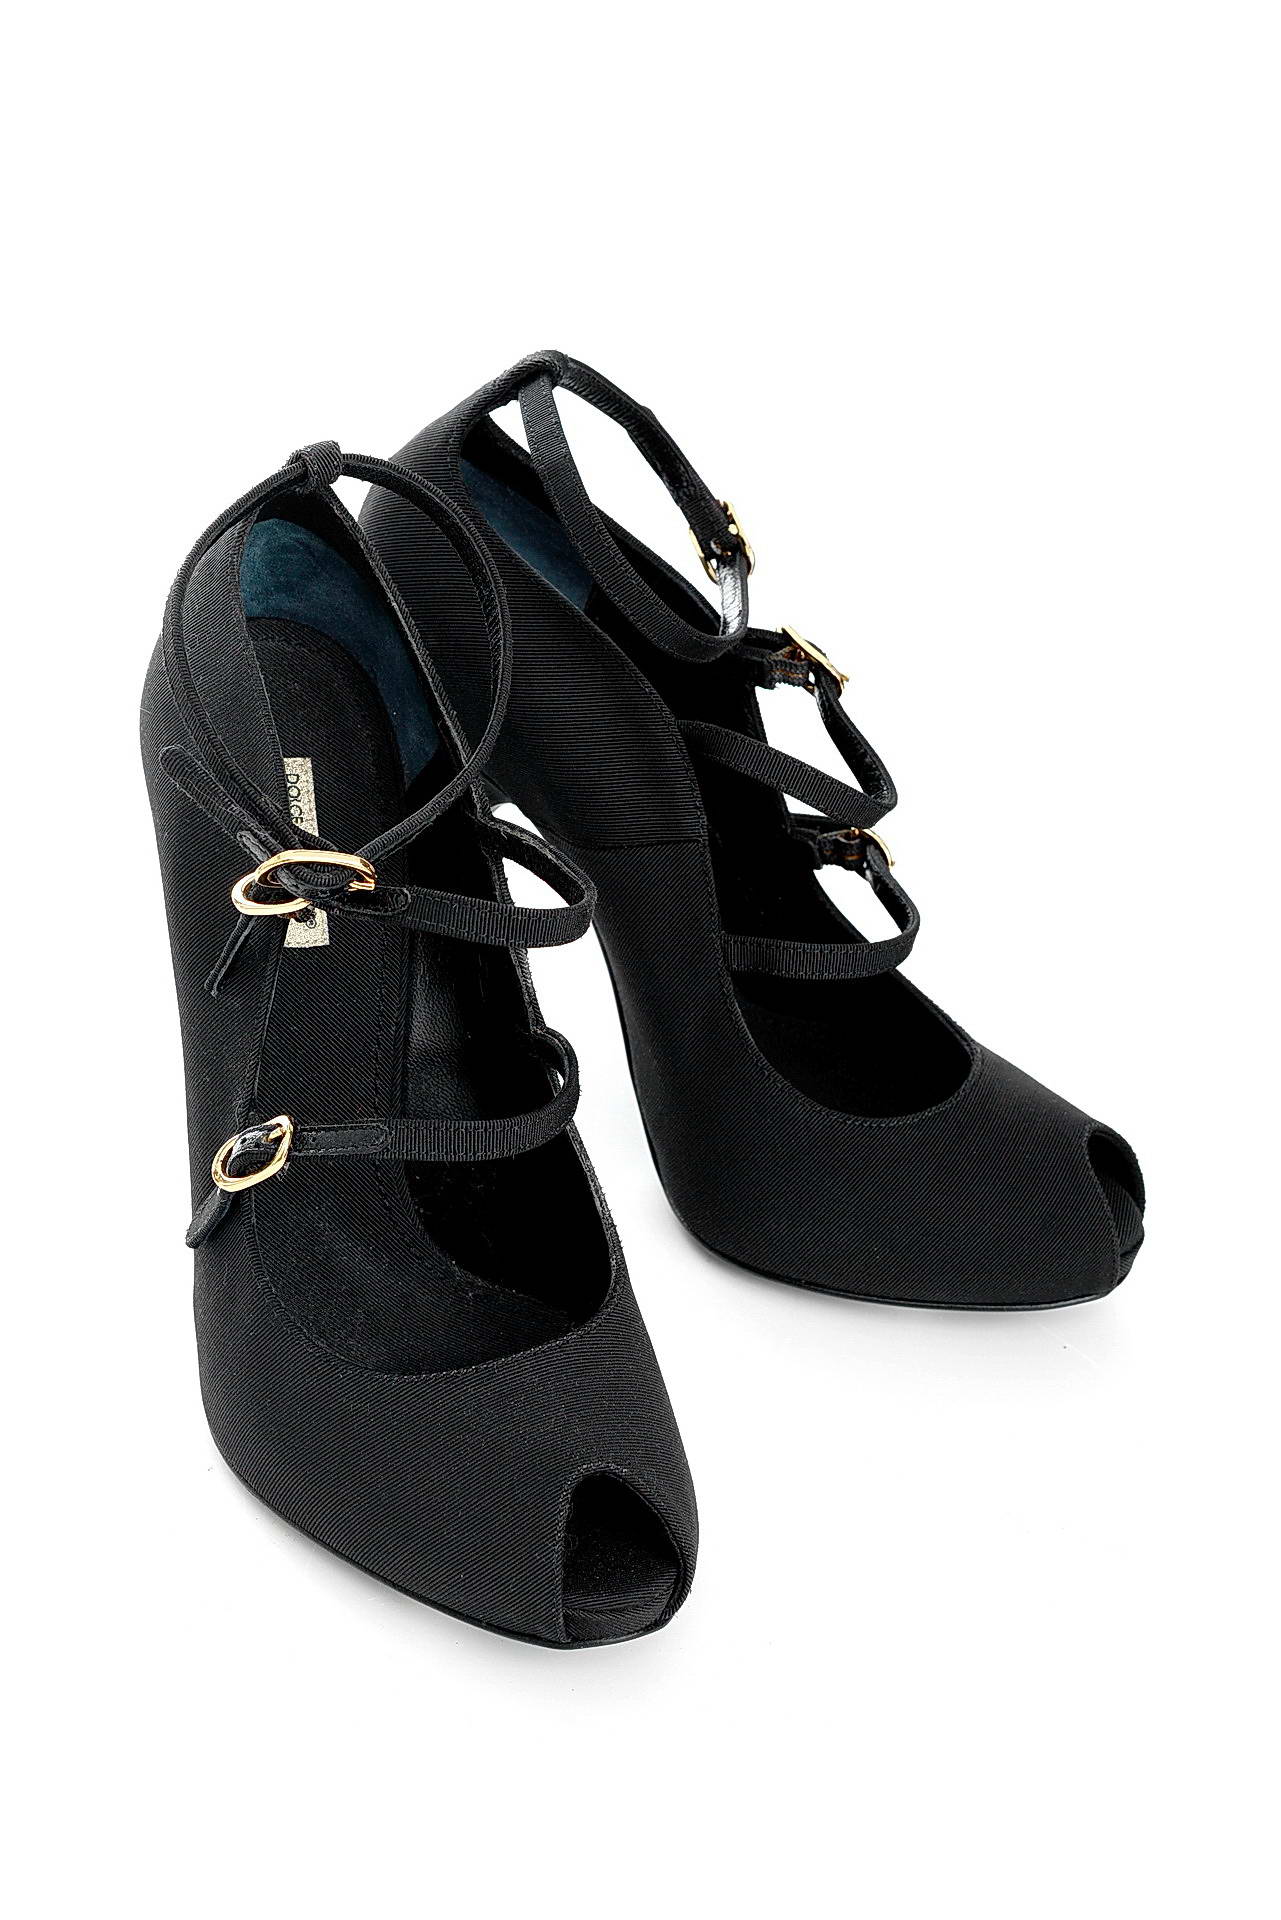 Обувь женская Туфли DOLCE & GABBANA (C10299A9F91/10.1). Купить за 14600 руб.